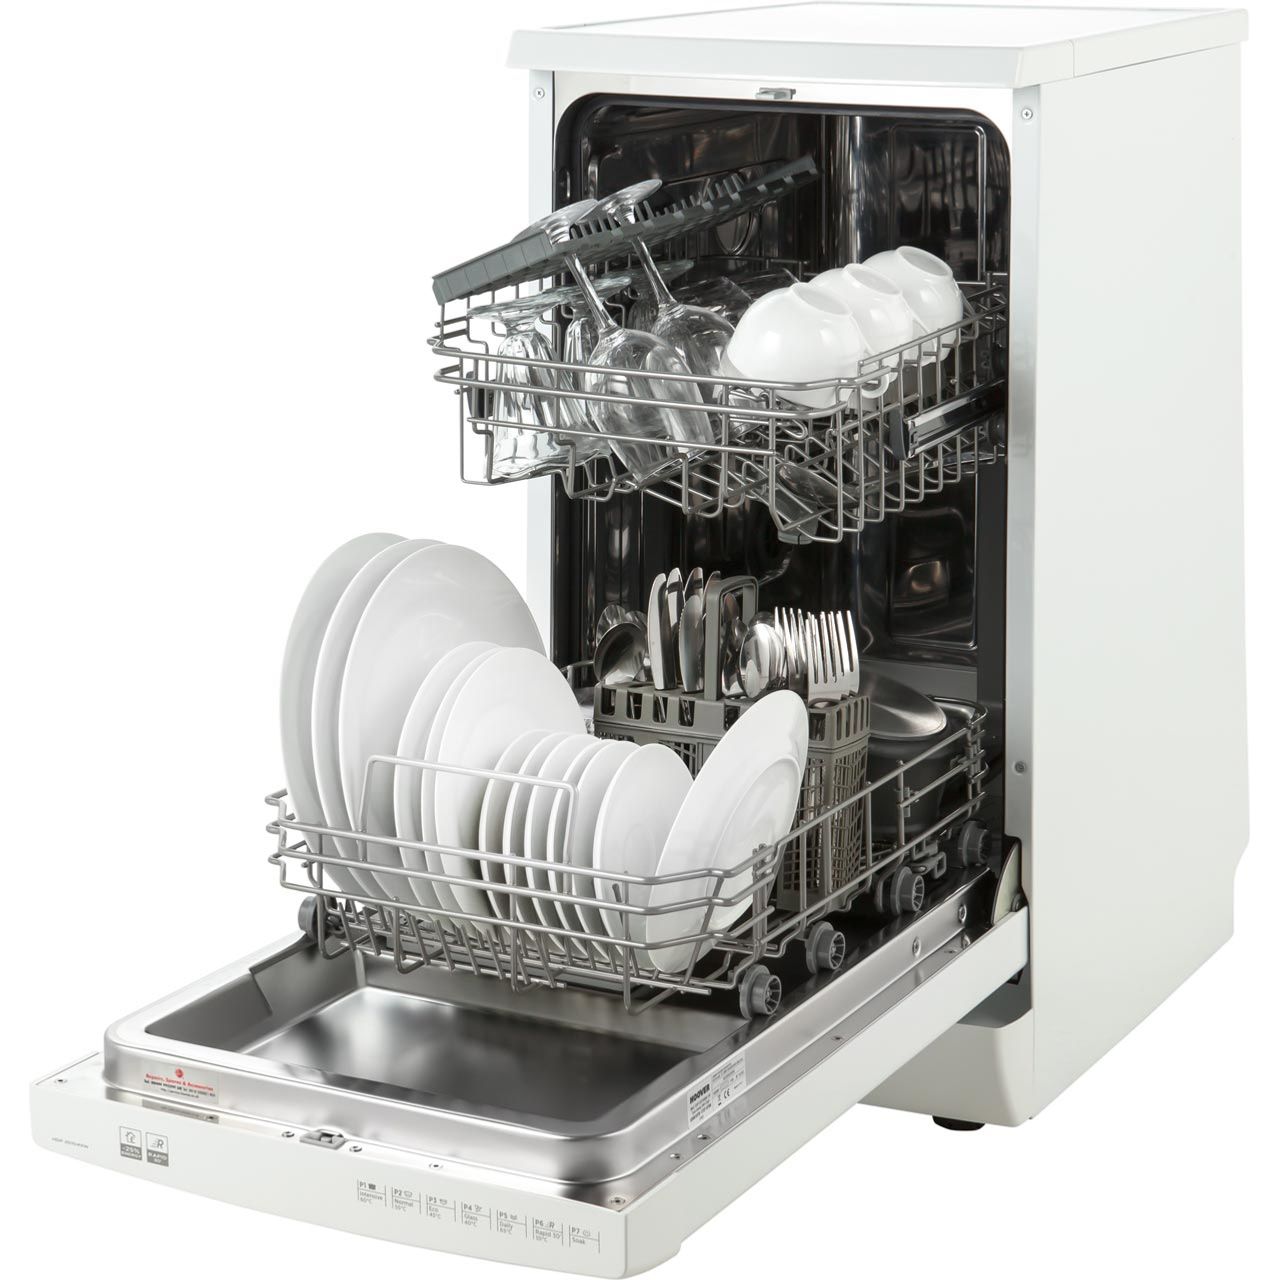 slimline dishwasher